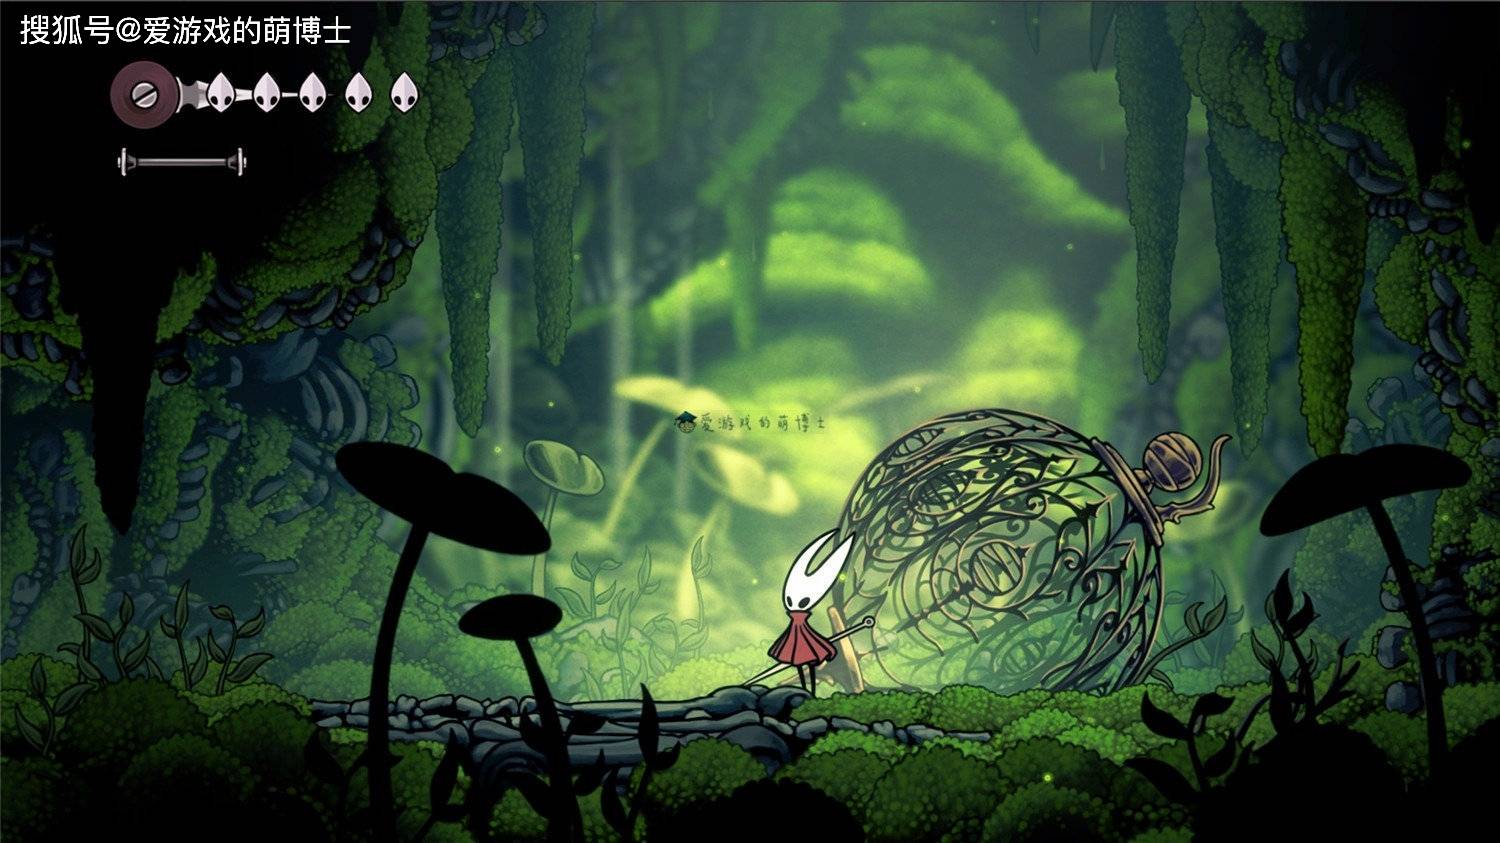 空洞骑士下载苹果版
:《空洞骑士》冷知识：游戏里许多演示动画其实是可替换的独立影片